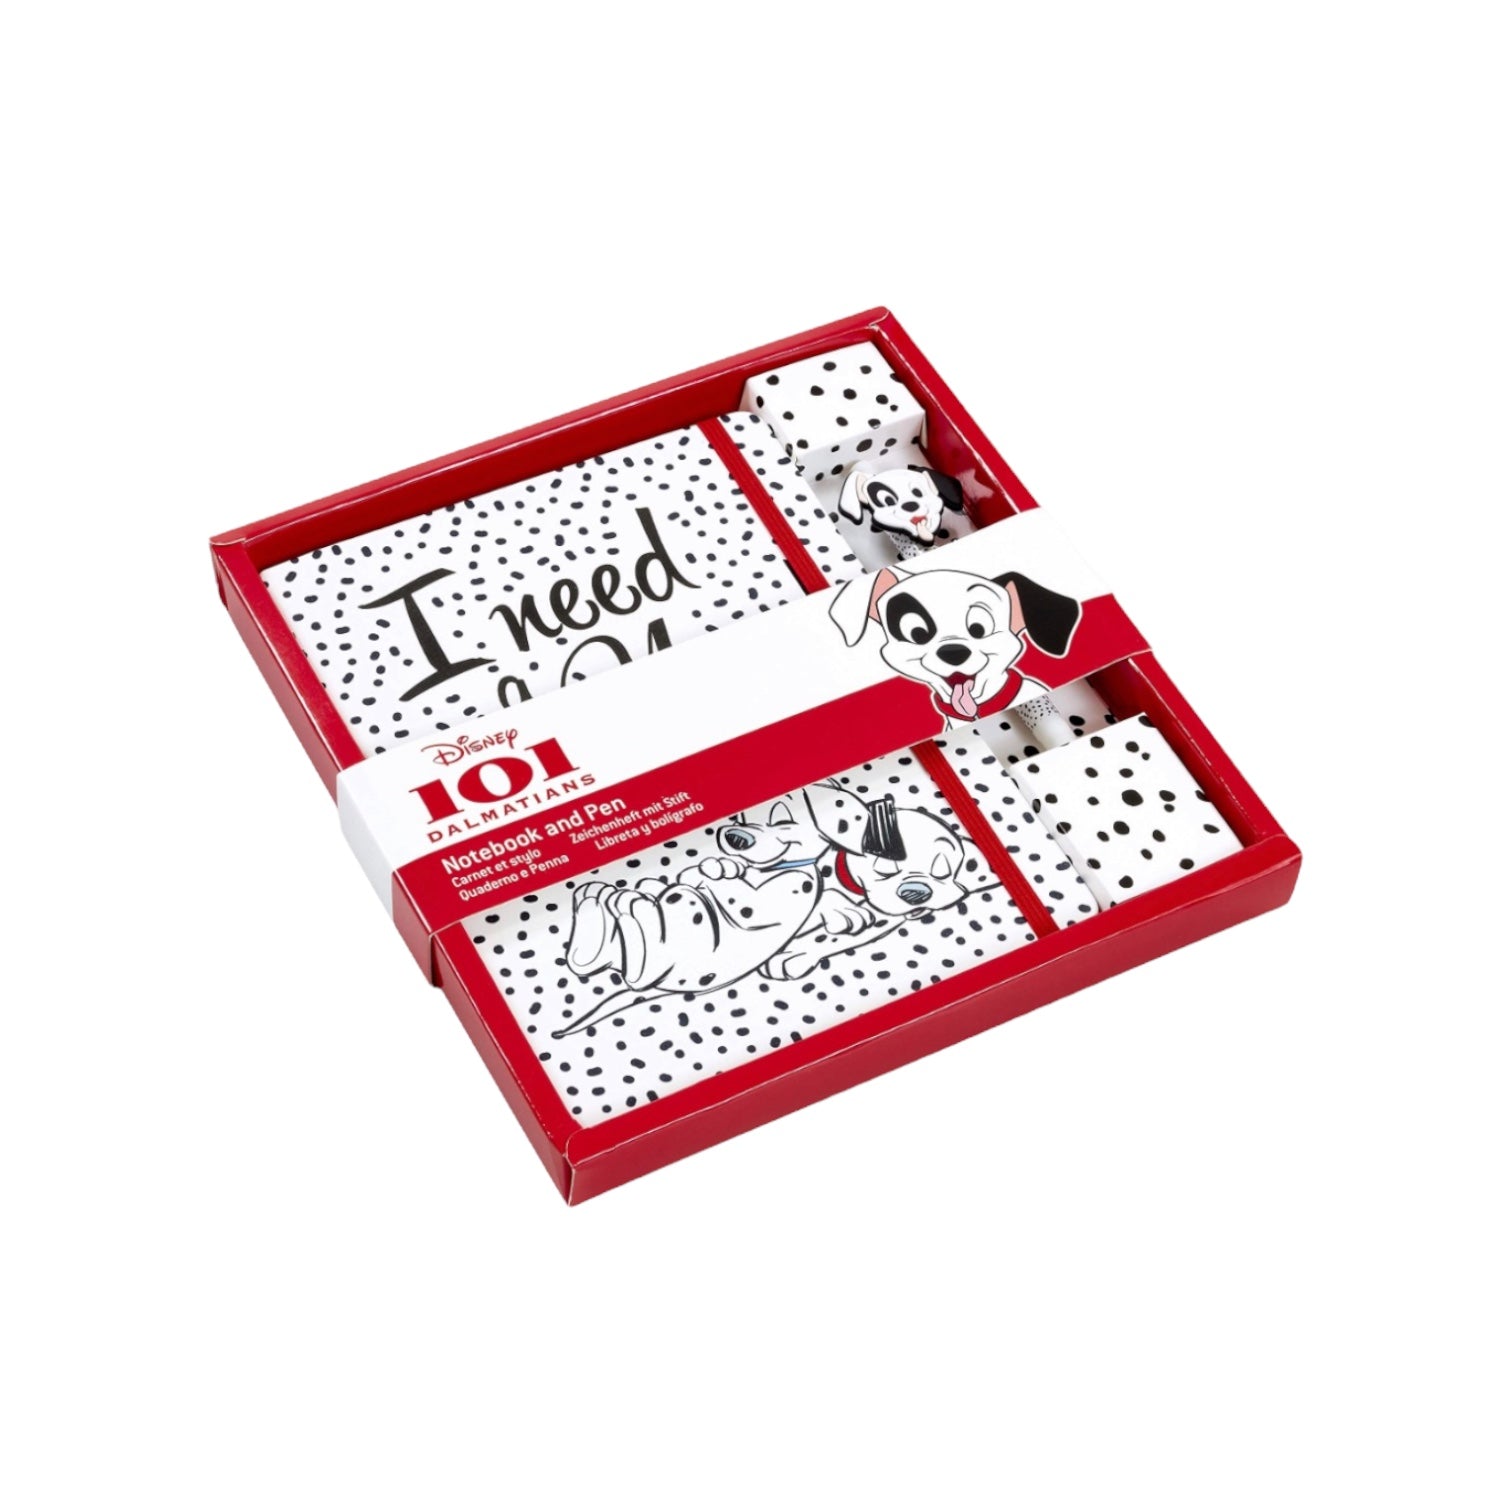 101 Dalmatians - I need a nap - Funko Notebook and Pen Set - Disney